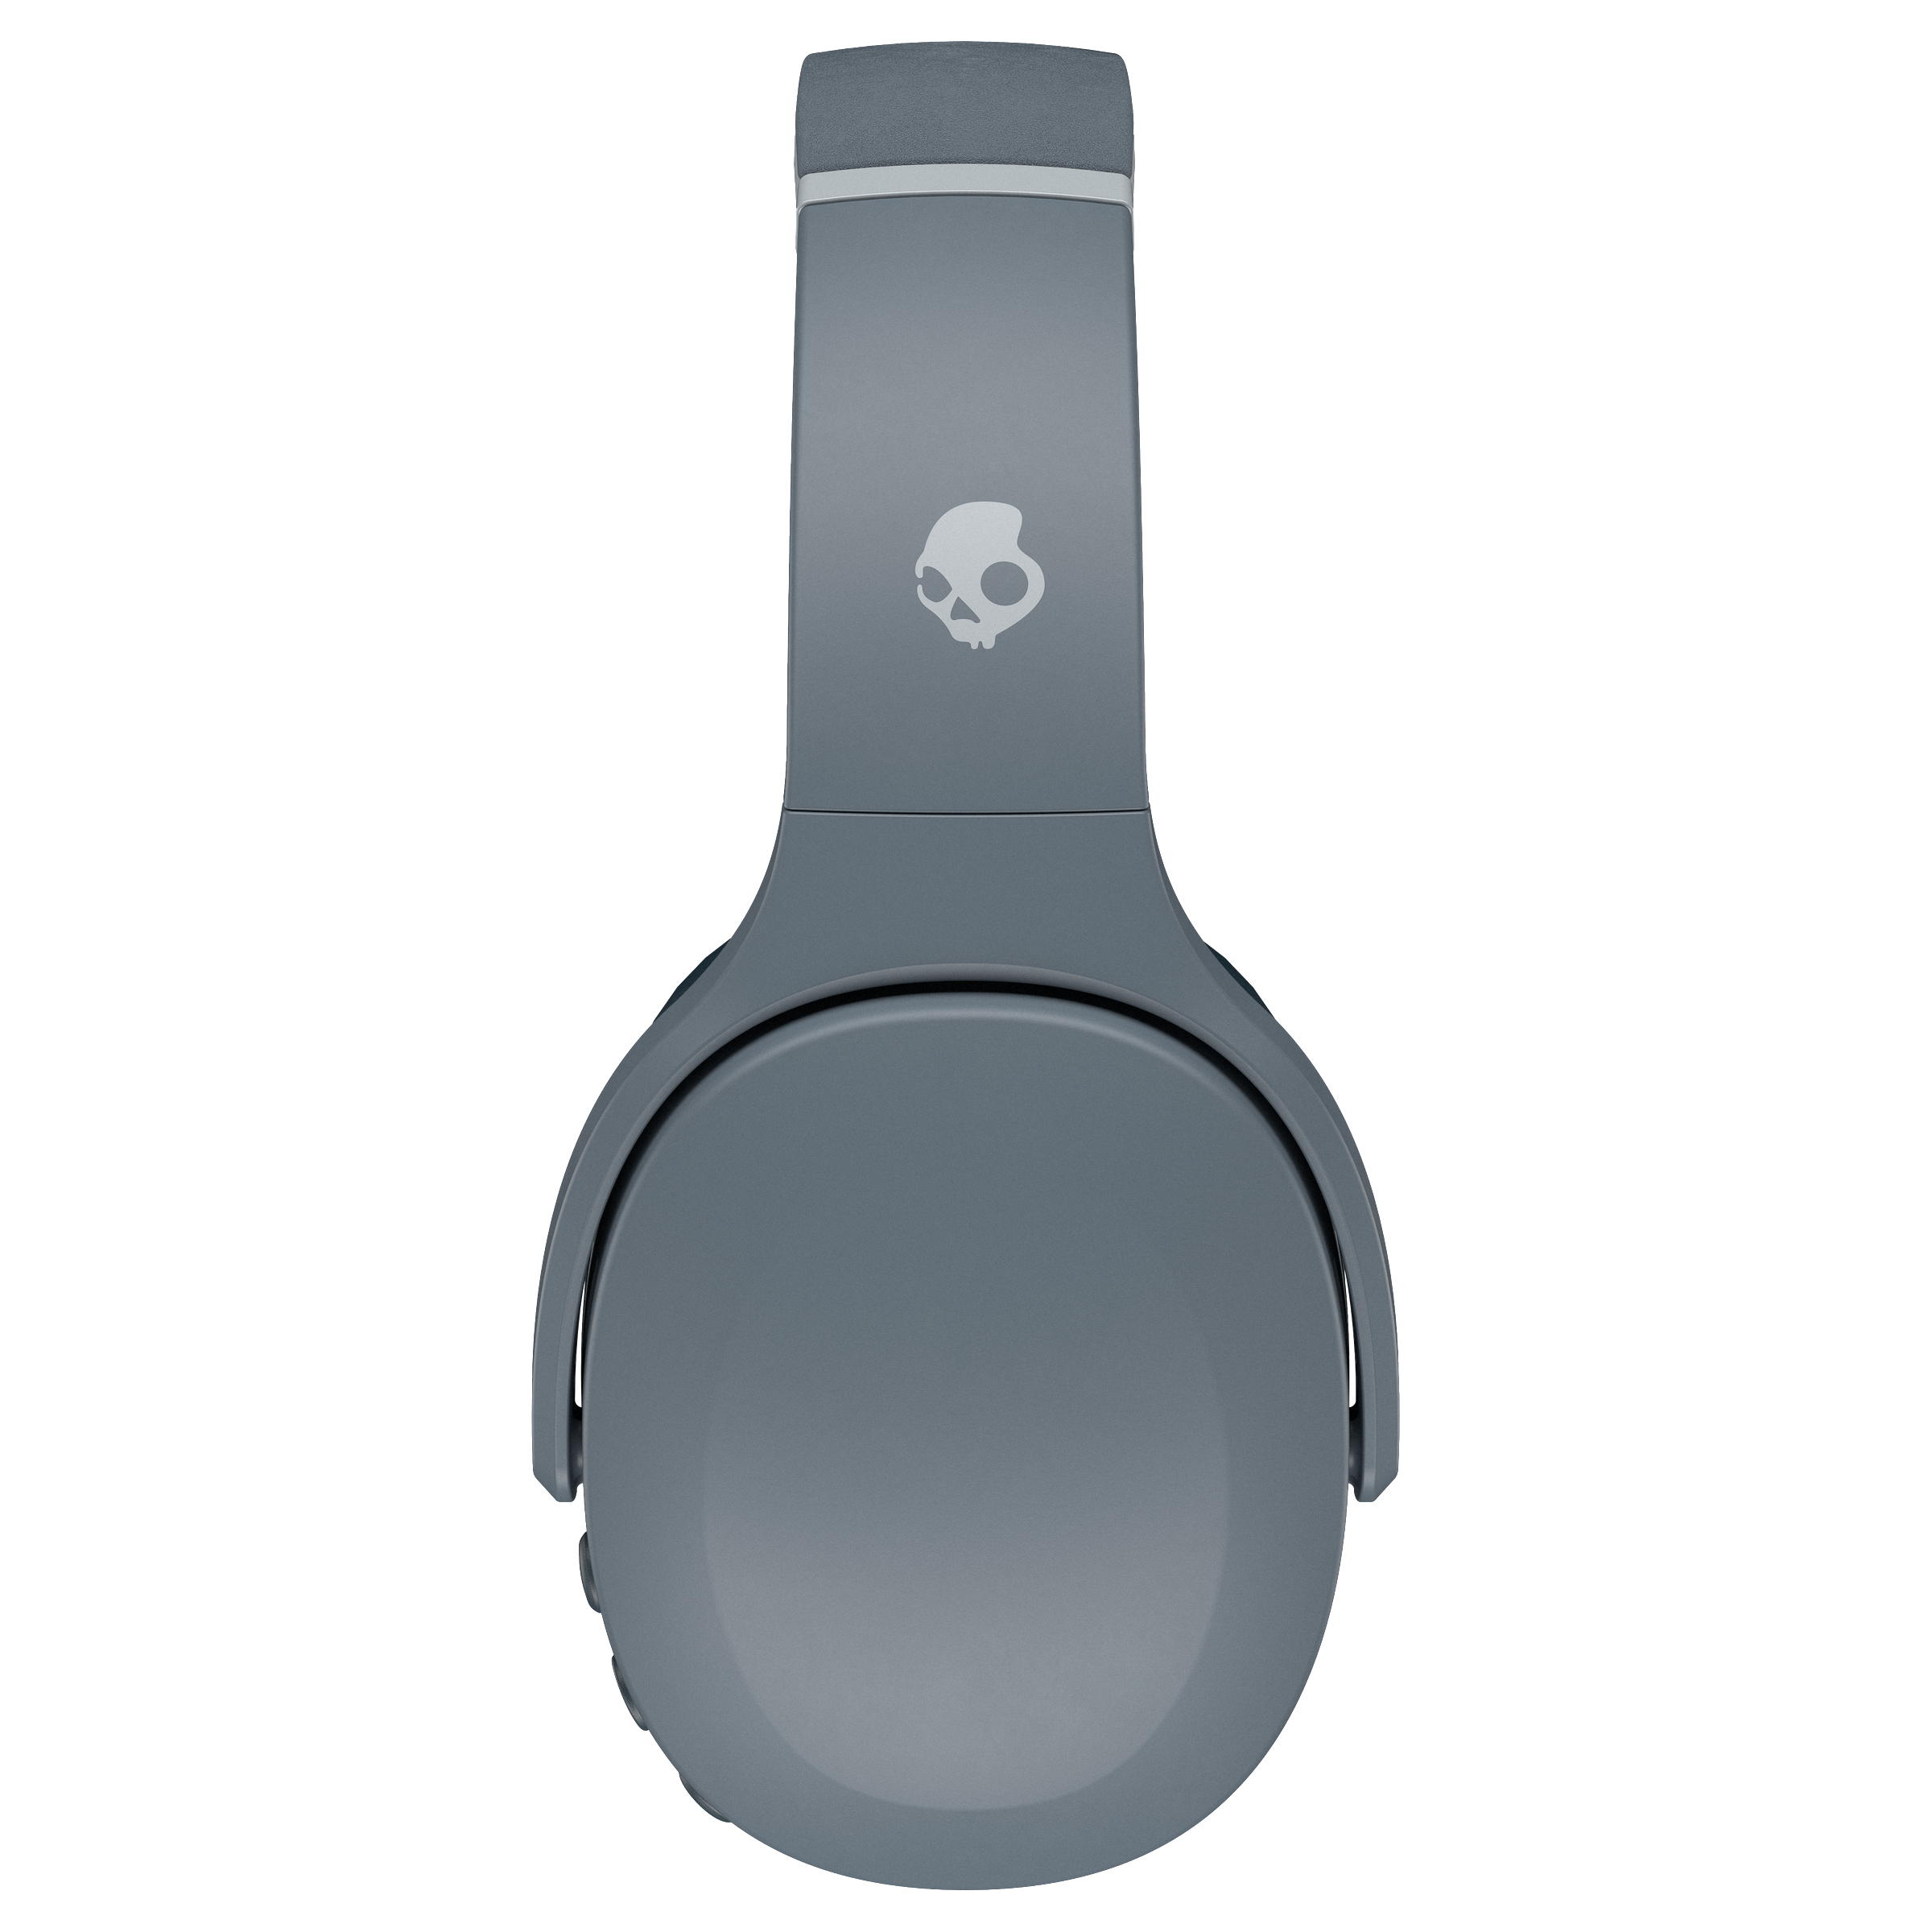 SKULLCANDY CRUSHER Grau Over-ear Bluetooth EVO, Kopfhörer